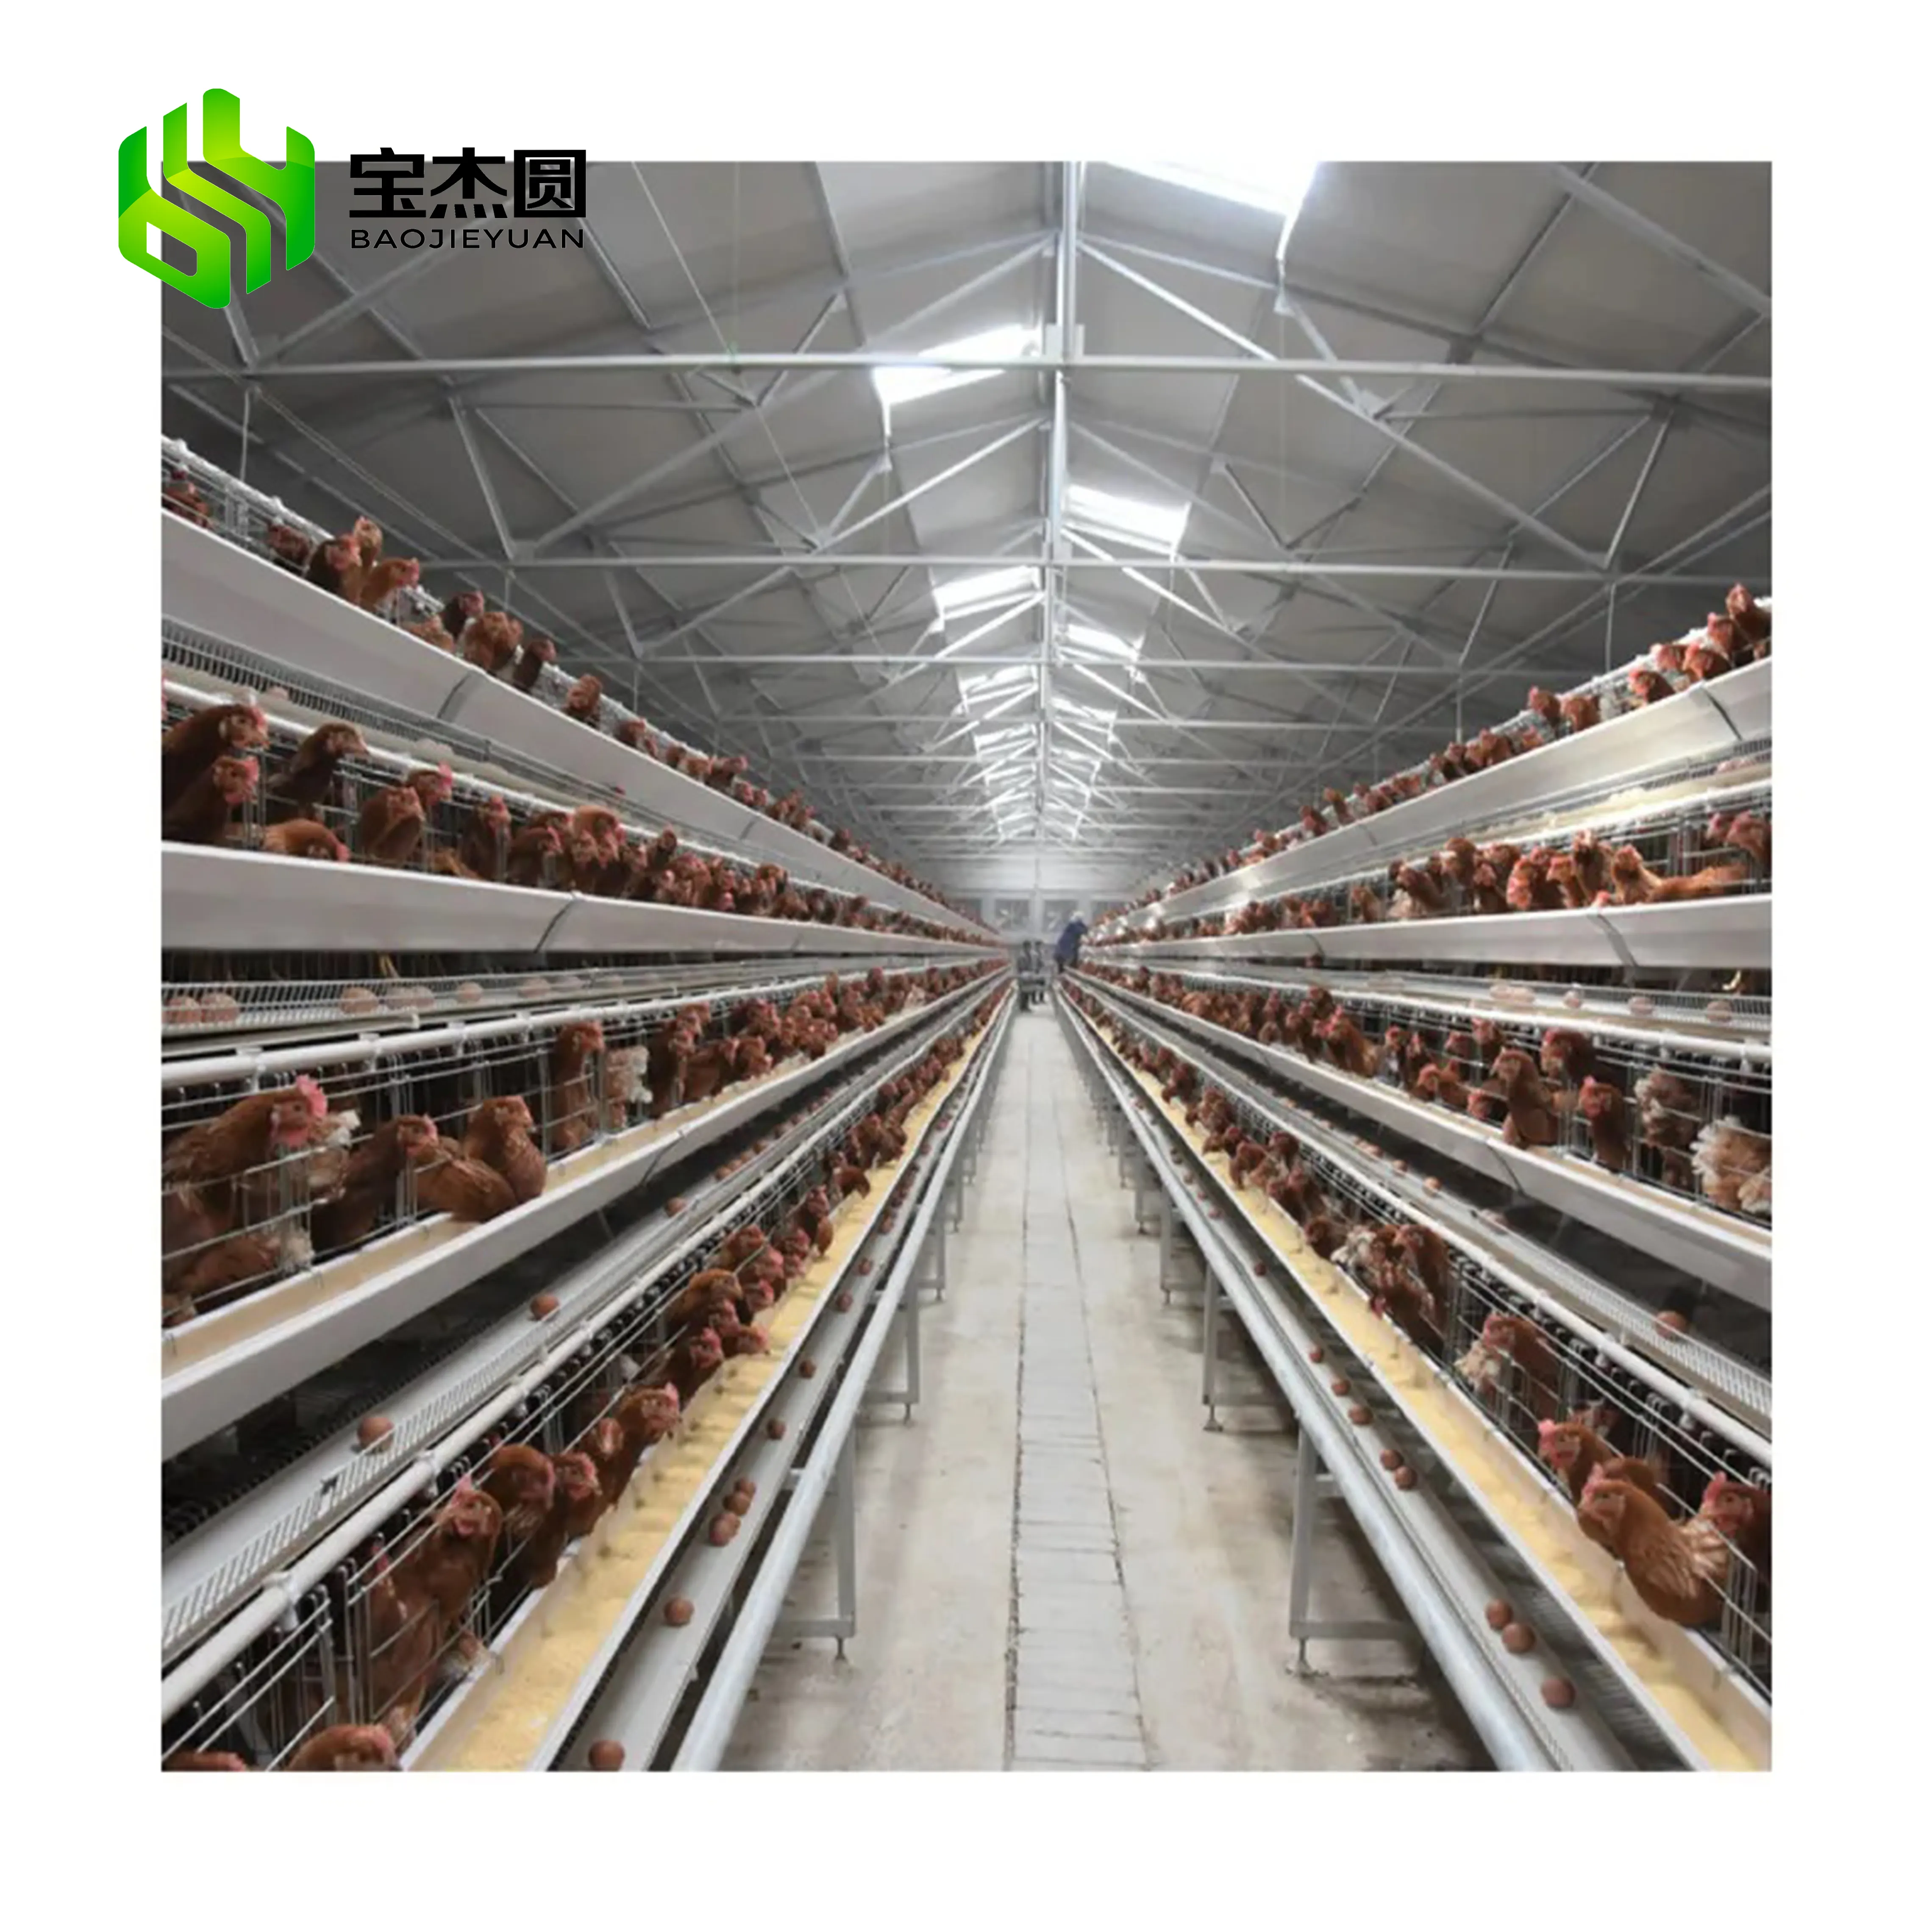 سعر المصنع 10000 الدجاج الطيور الحيوان وضع البيض البطارية طبقة التلقائي أقفاص دجاج ل معدّات تربية الدواجن